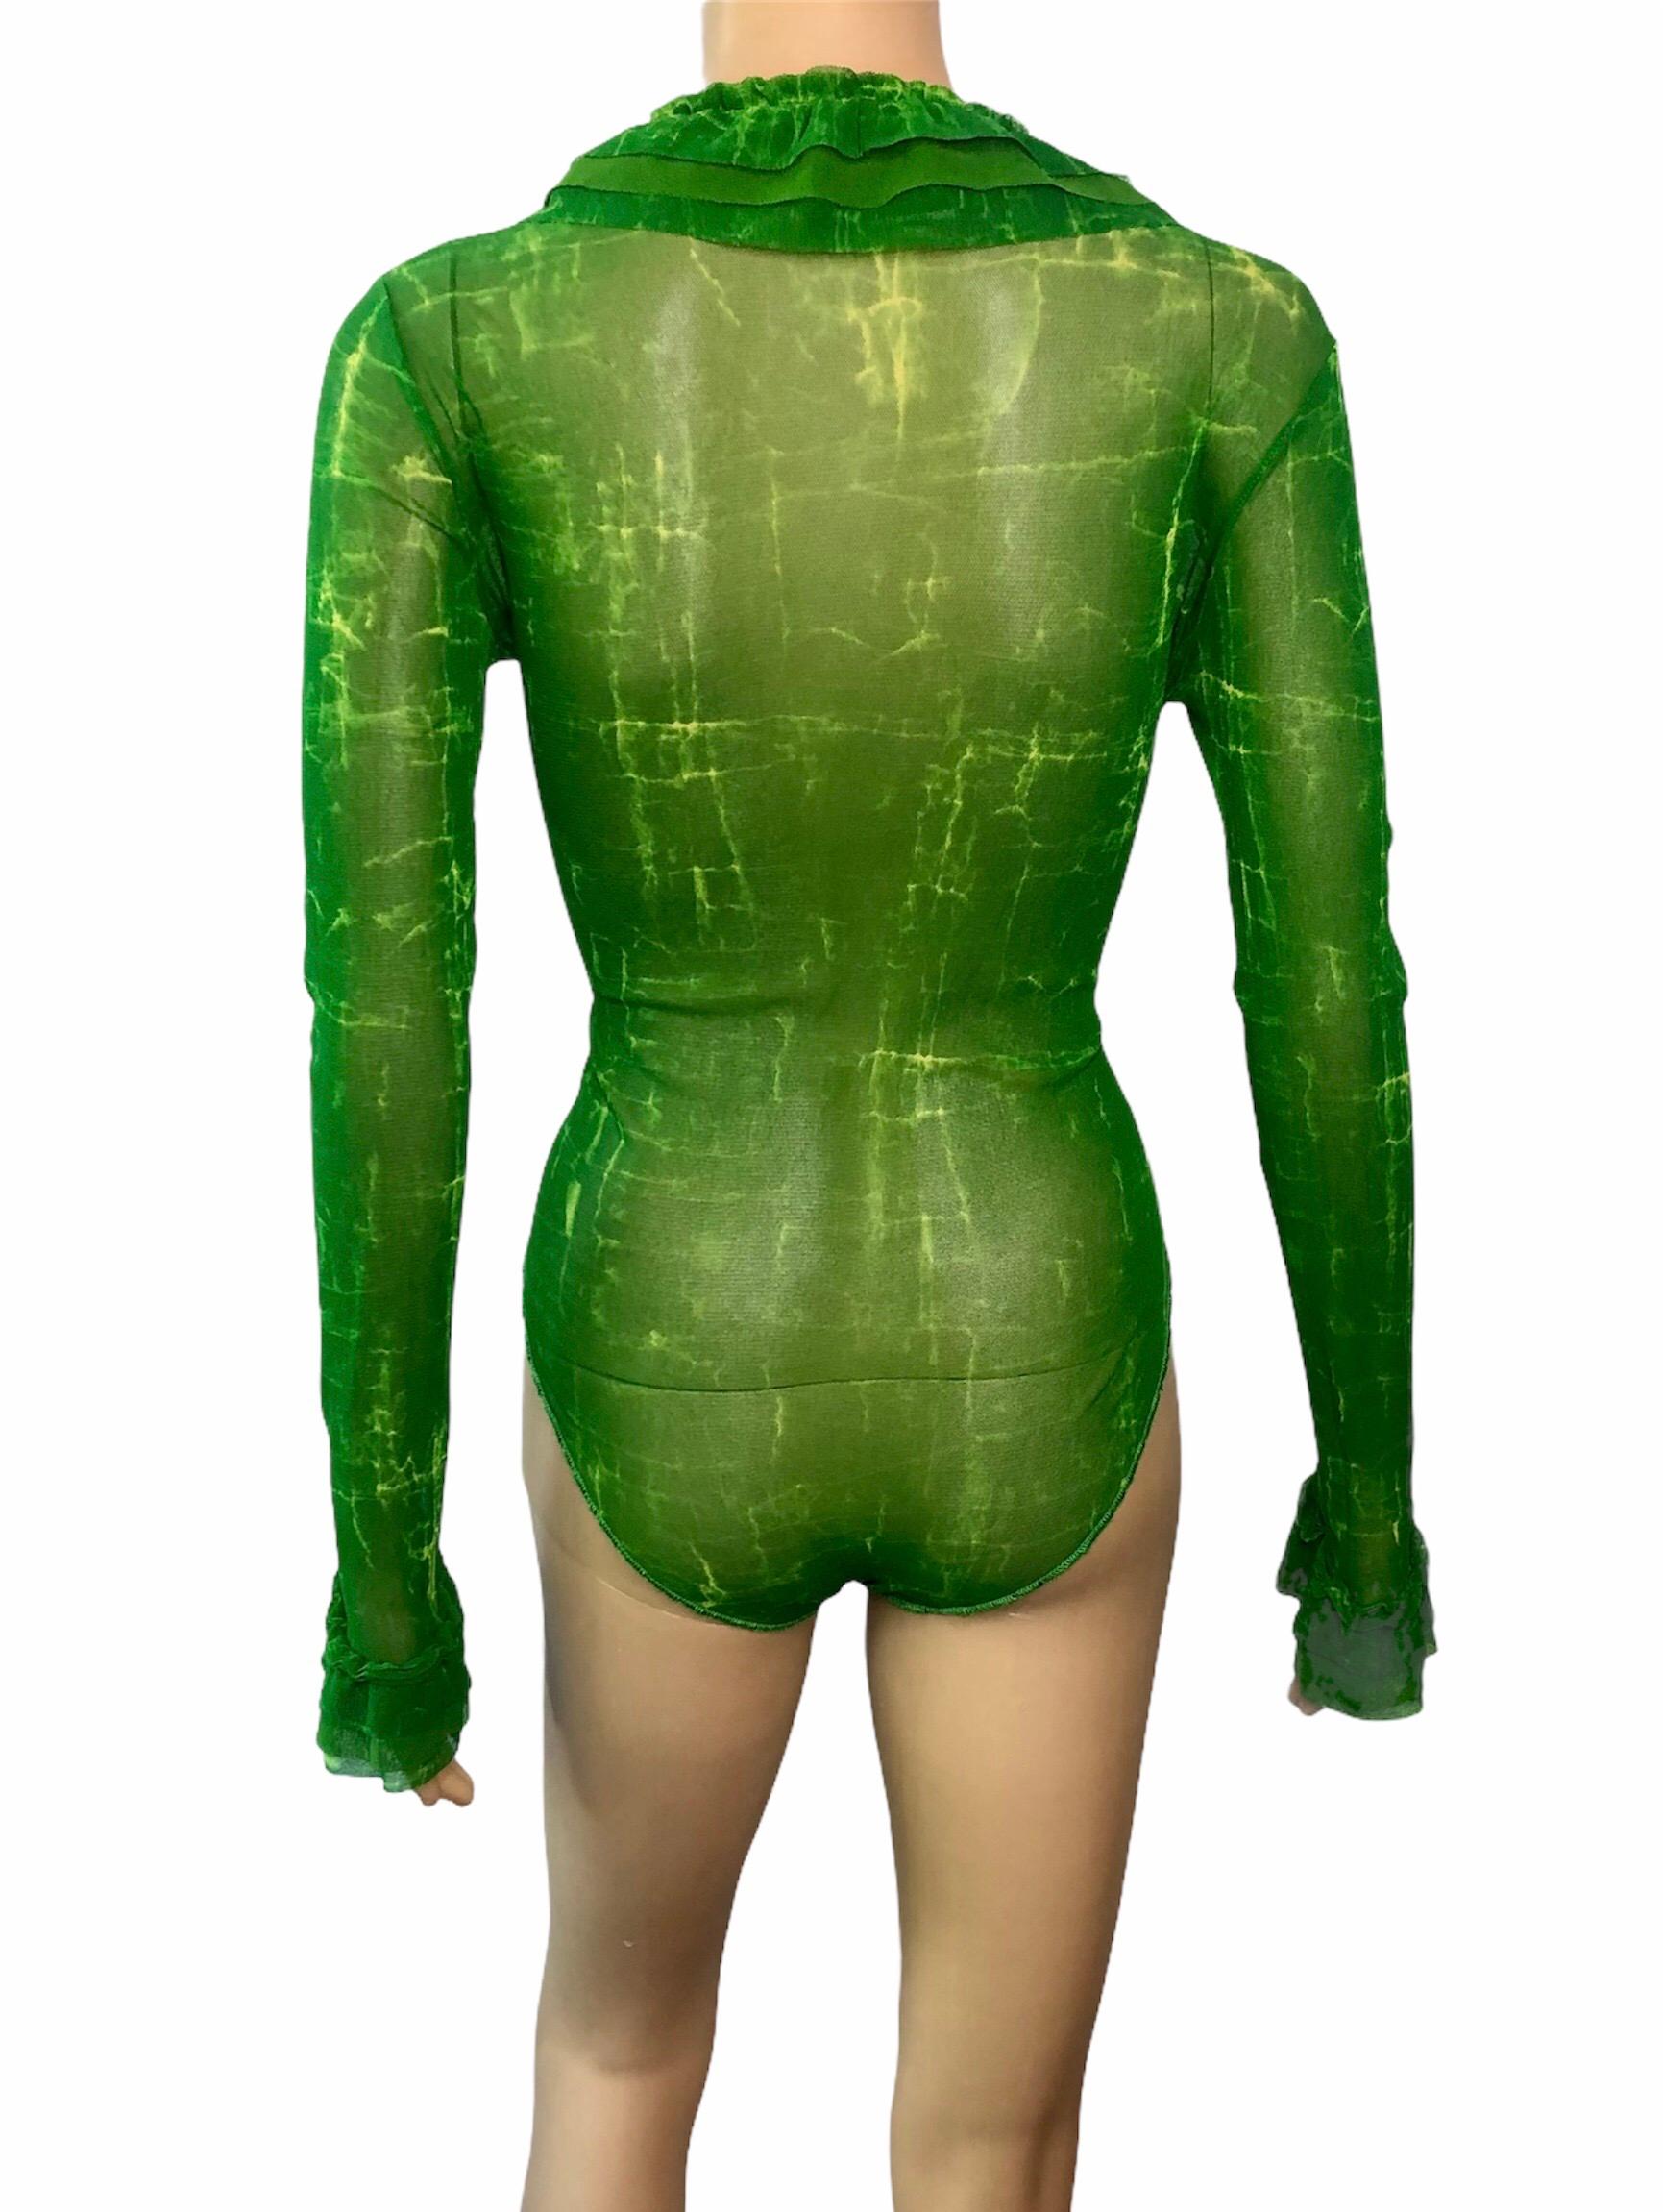 Jean Paul Gaultier Classique 1990's Vintage Semi-Sheer Mesh Green Bodysuit Top

